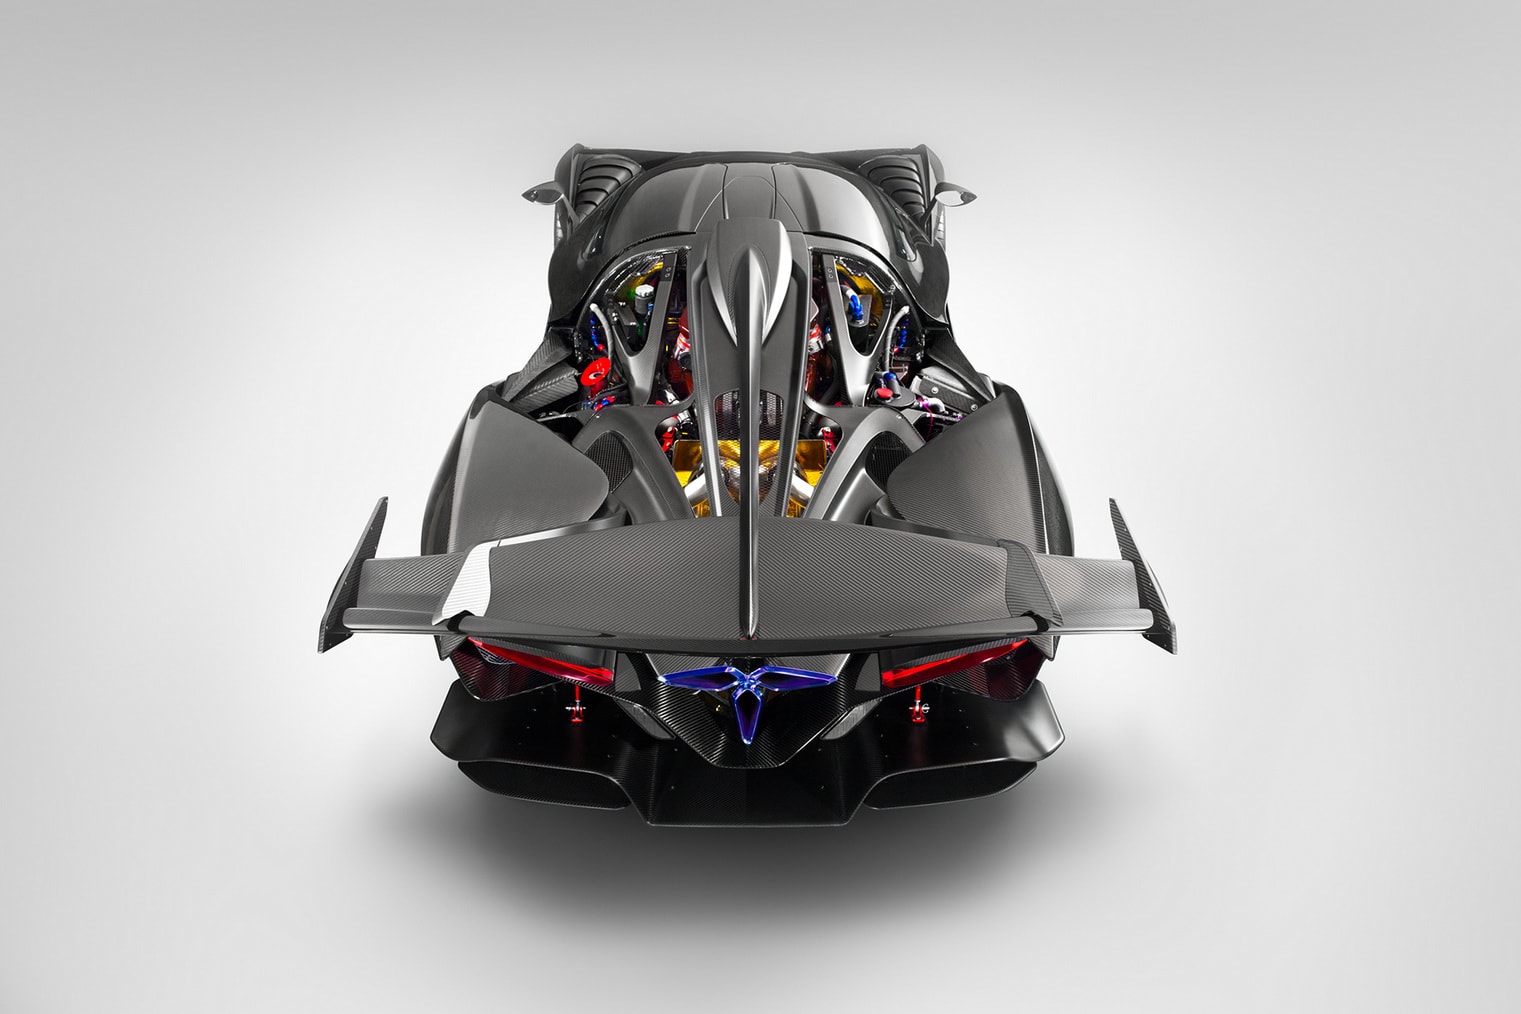 Apollo Intensa Emozione Hypercar Supercar car vehicle black carbon fiber